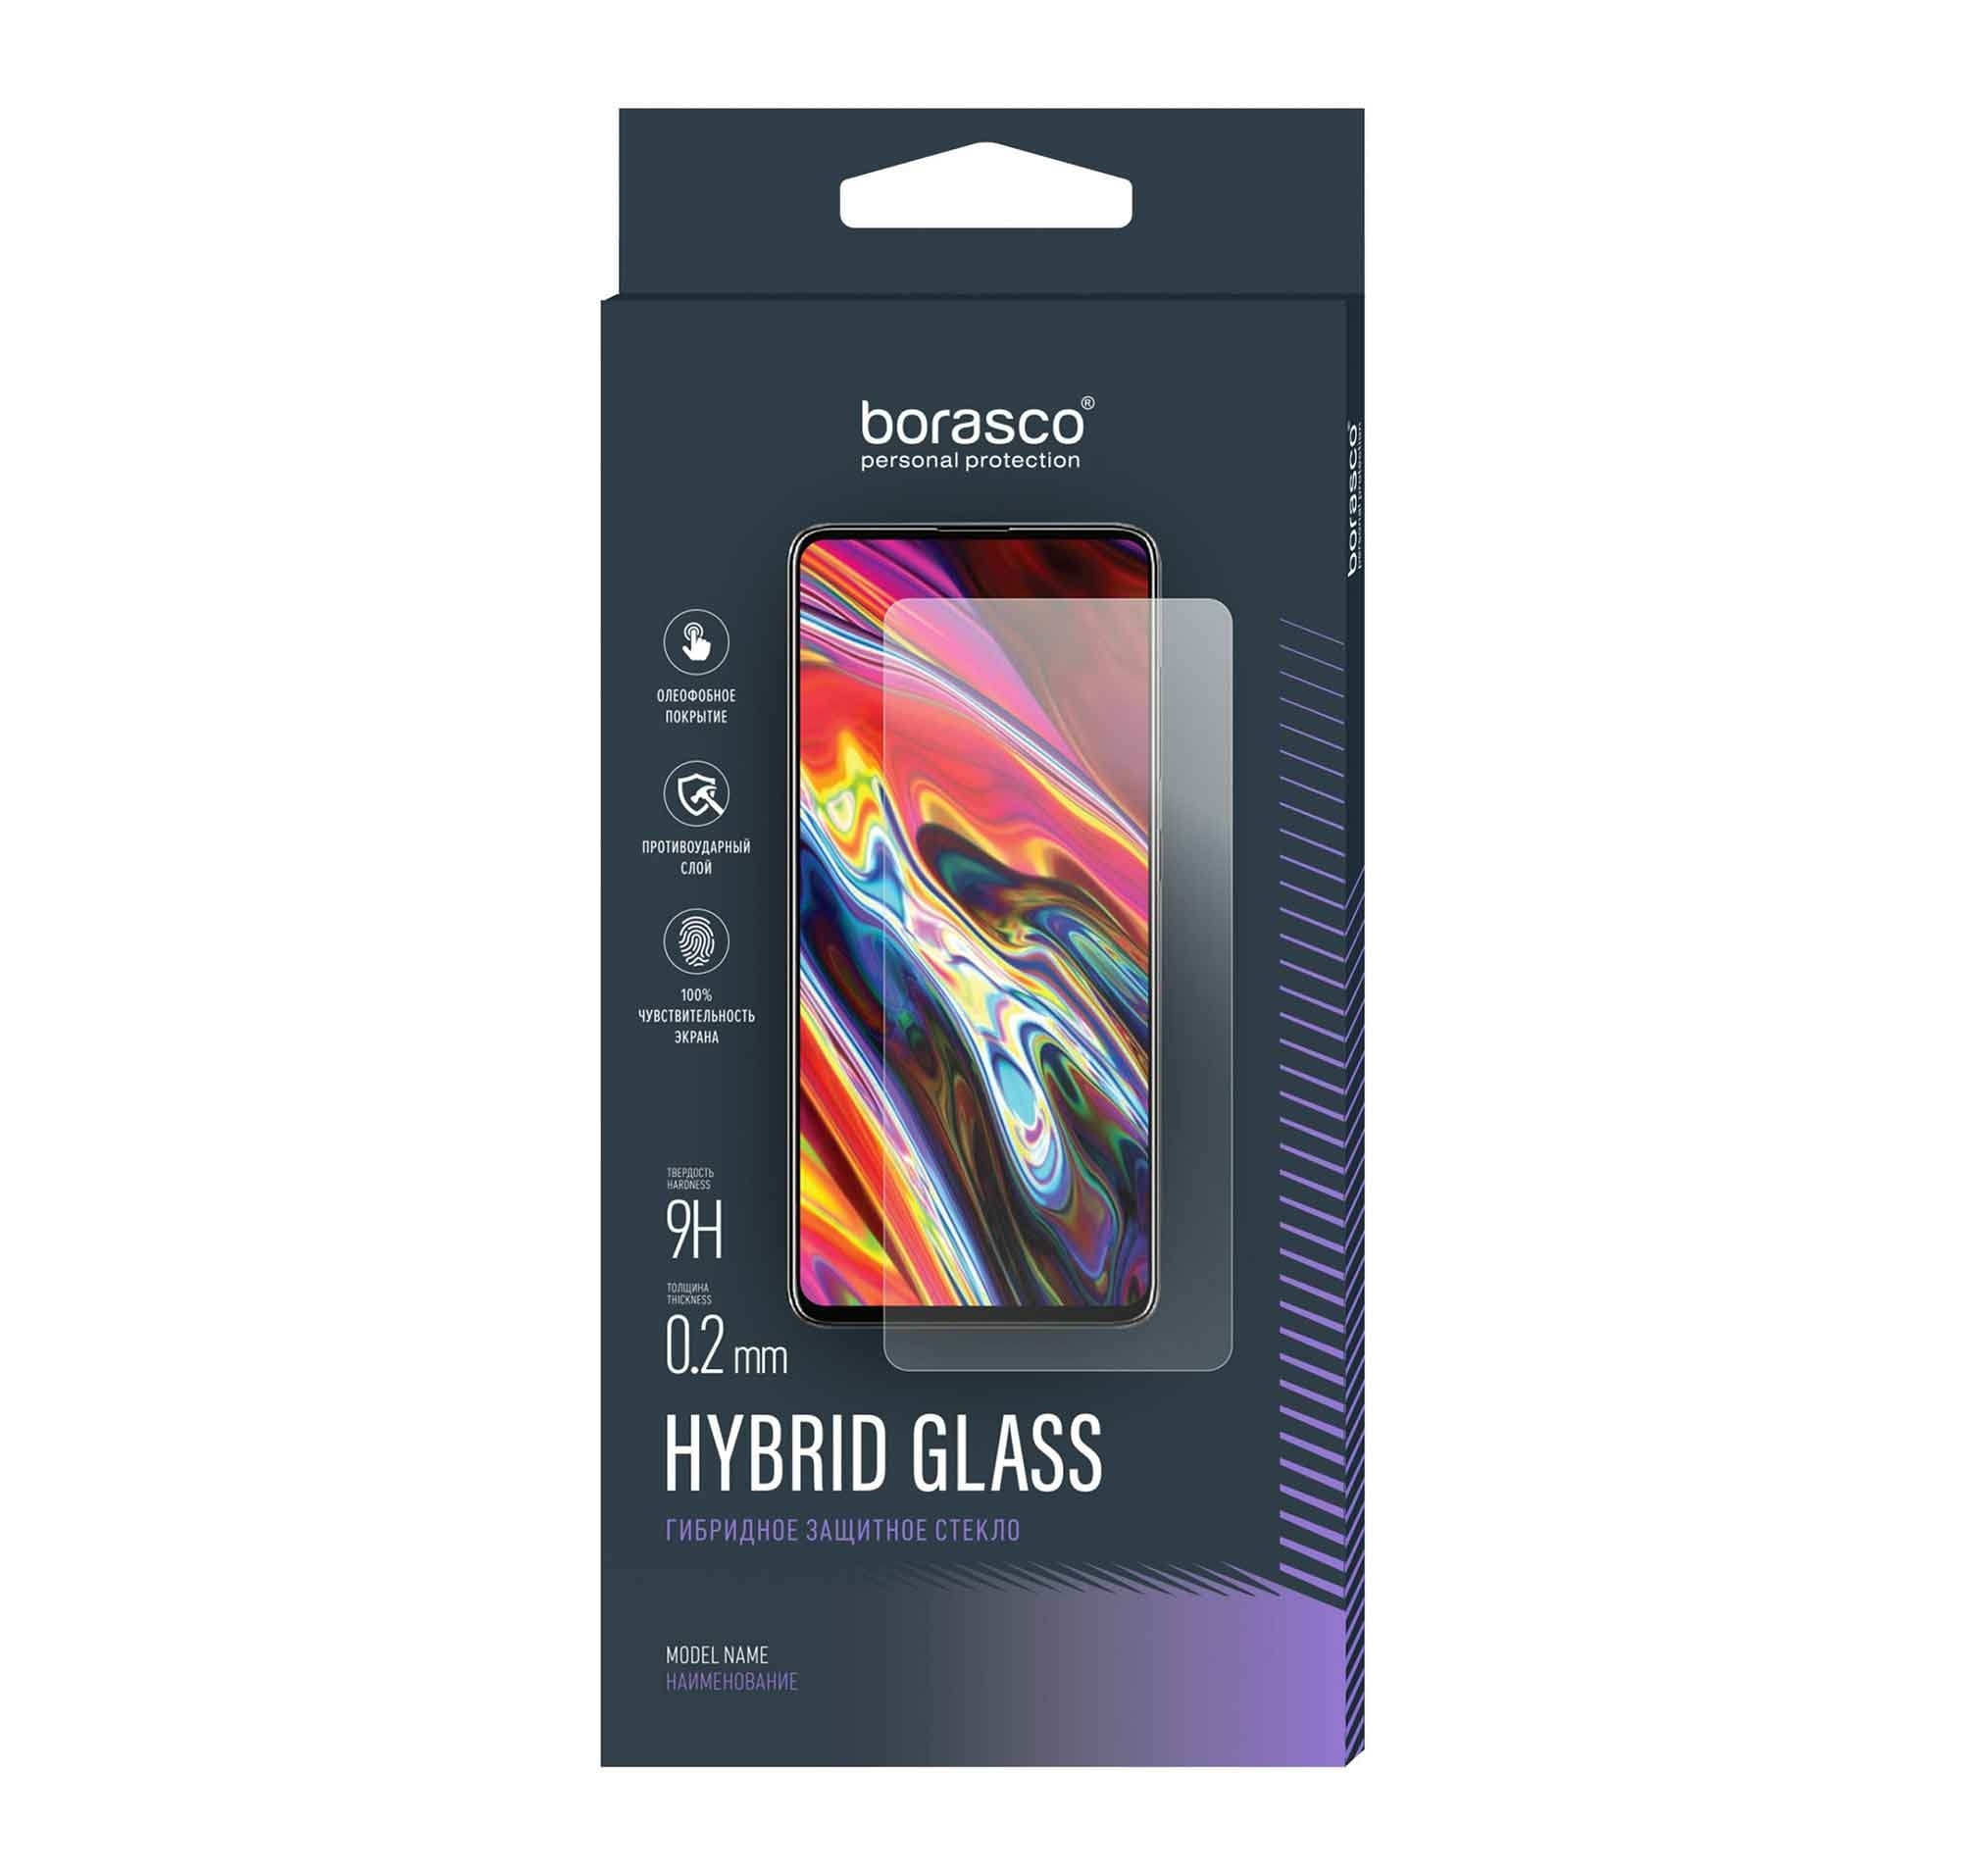 Стекло защитное BoraSCO Hybrid Glass для Oukitel F150 R2022 чехол mypads кружка для oukitel f150 r2022 задняя панель накладка бампер